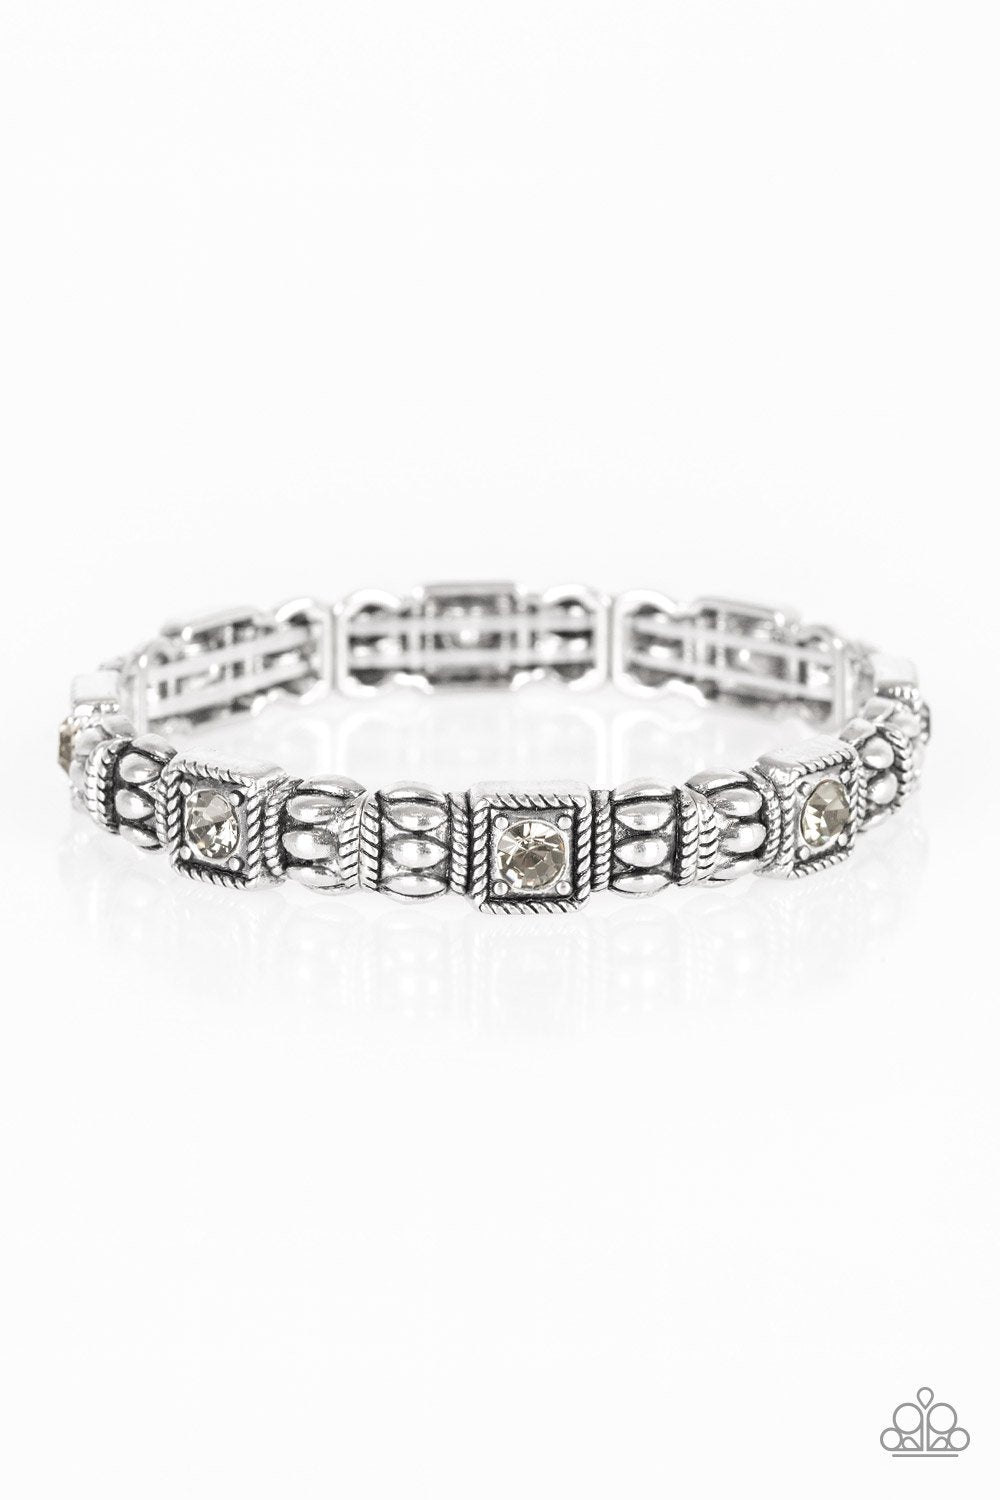 Metro Marvelous Smoky Rhinestone Silver Stretch Bracelet - Paparazzi Accessories-CarasShop.com - $5 Jewelry by Cara Jewels